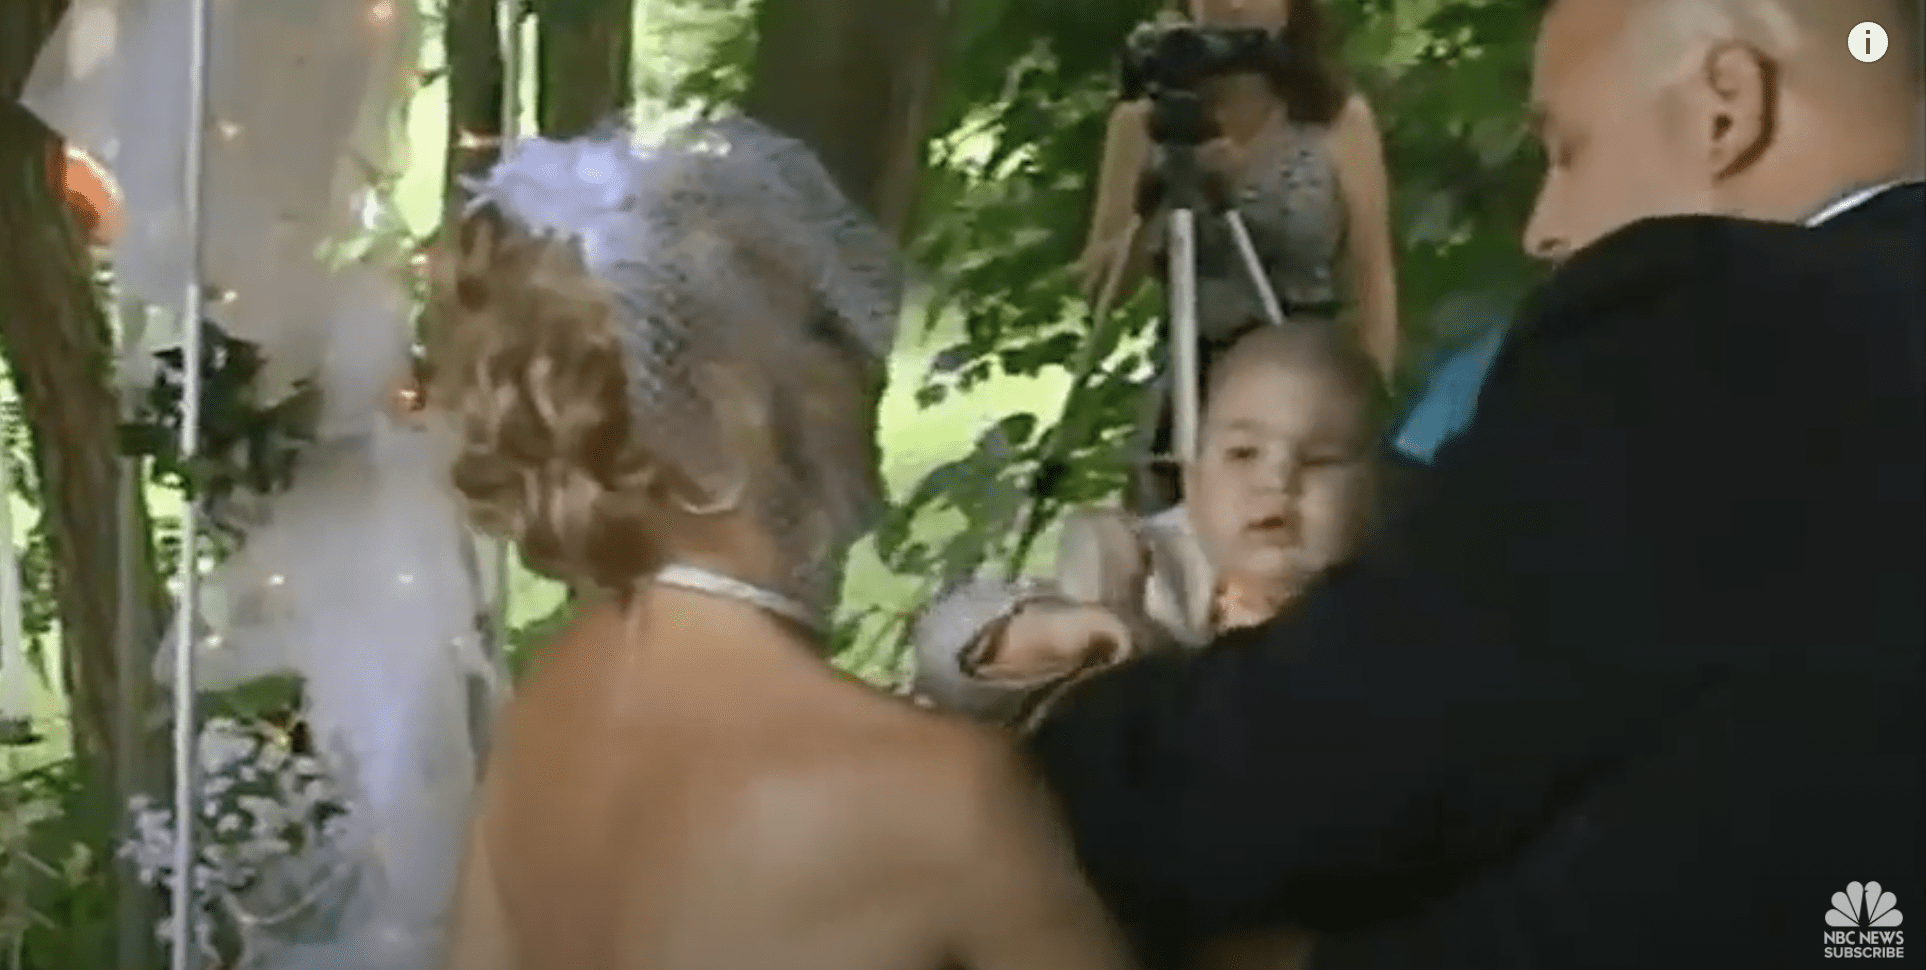 Christine und Sean bei ihrer Hochzeit mit Sohn Logan als Trauzeuge | Quelle: YouTube/NBC News